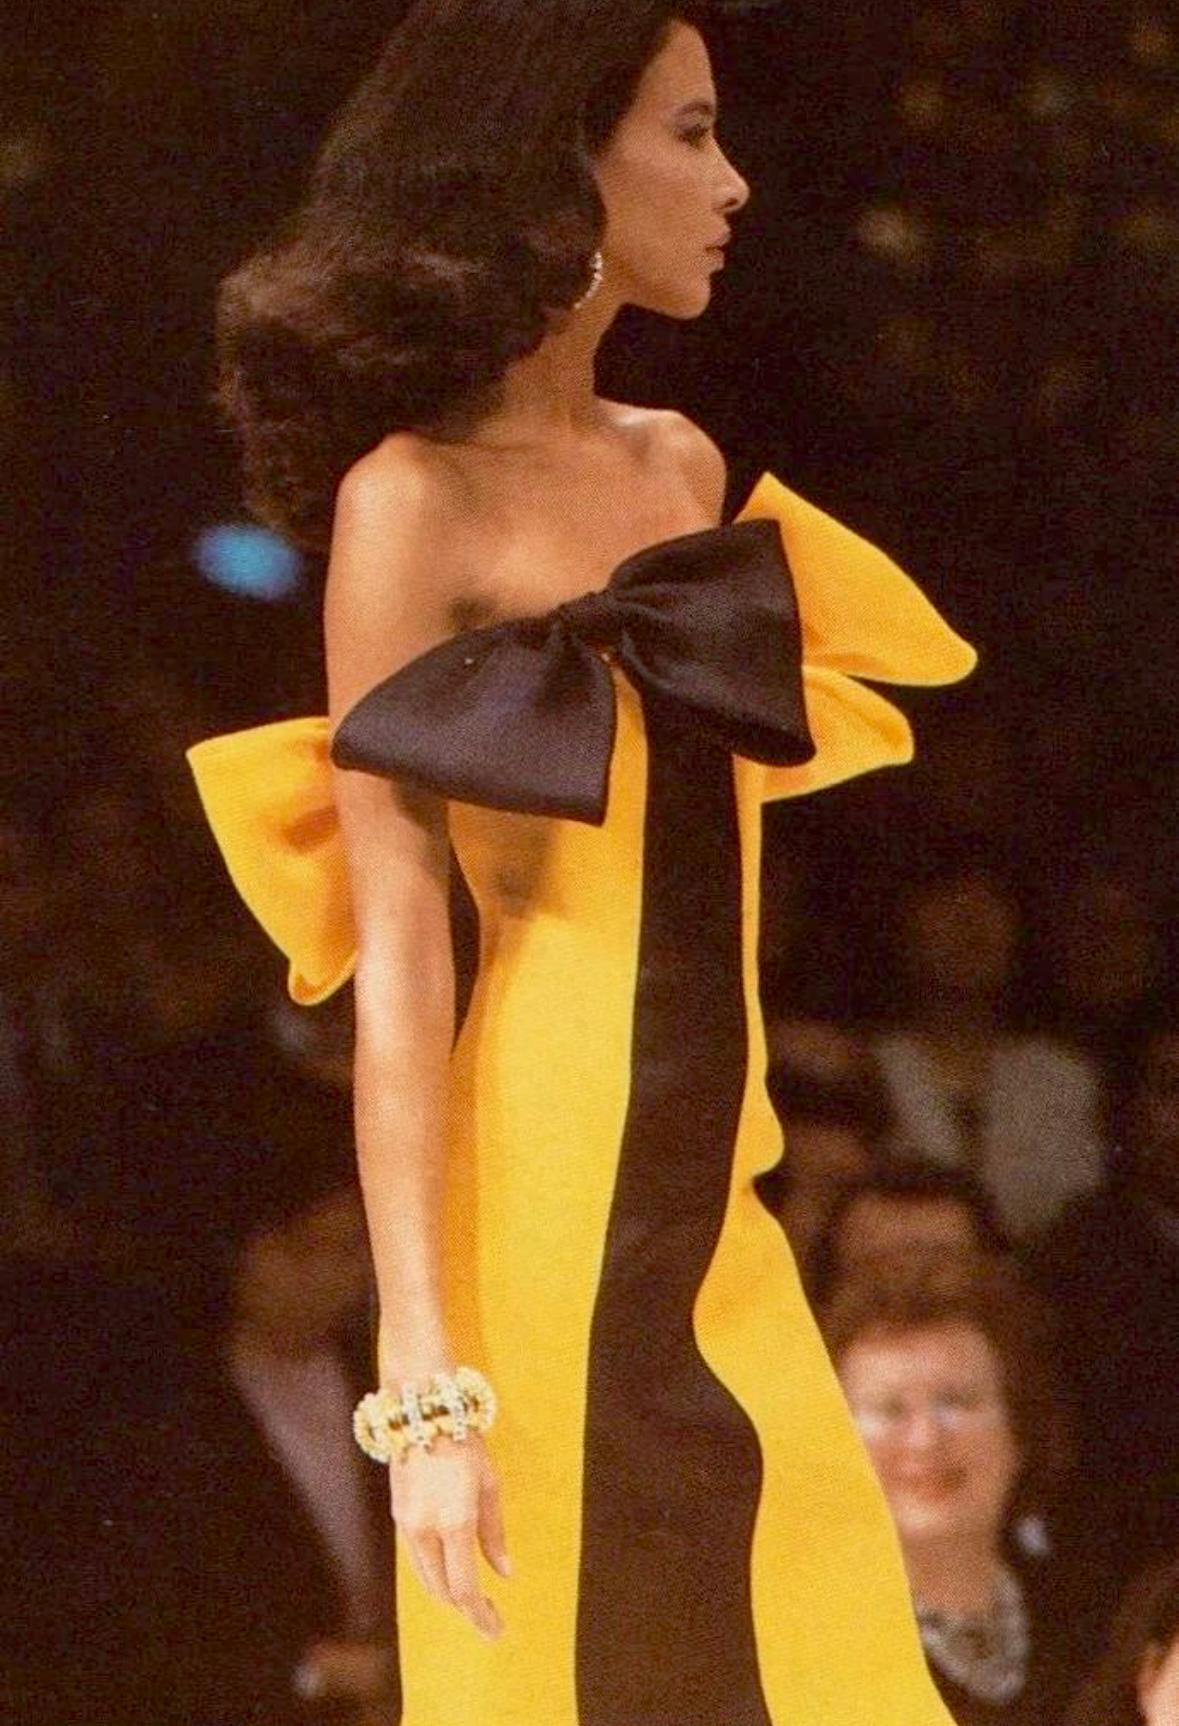 Wir präsentieren ein unglaubliches gelb-schwarzes Givenchy-Haute-Couture-Kleid, entworfen von einem der Meister der Haute Couture des 20. Jahrhunderts, Hubert de Givenchy. Dieses sanduhrförmige Kleid aus der Haute Couture-Kollektion Frühjahr/Sommer